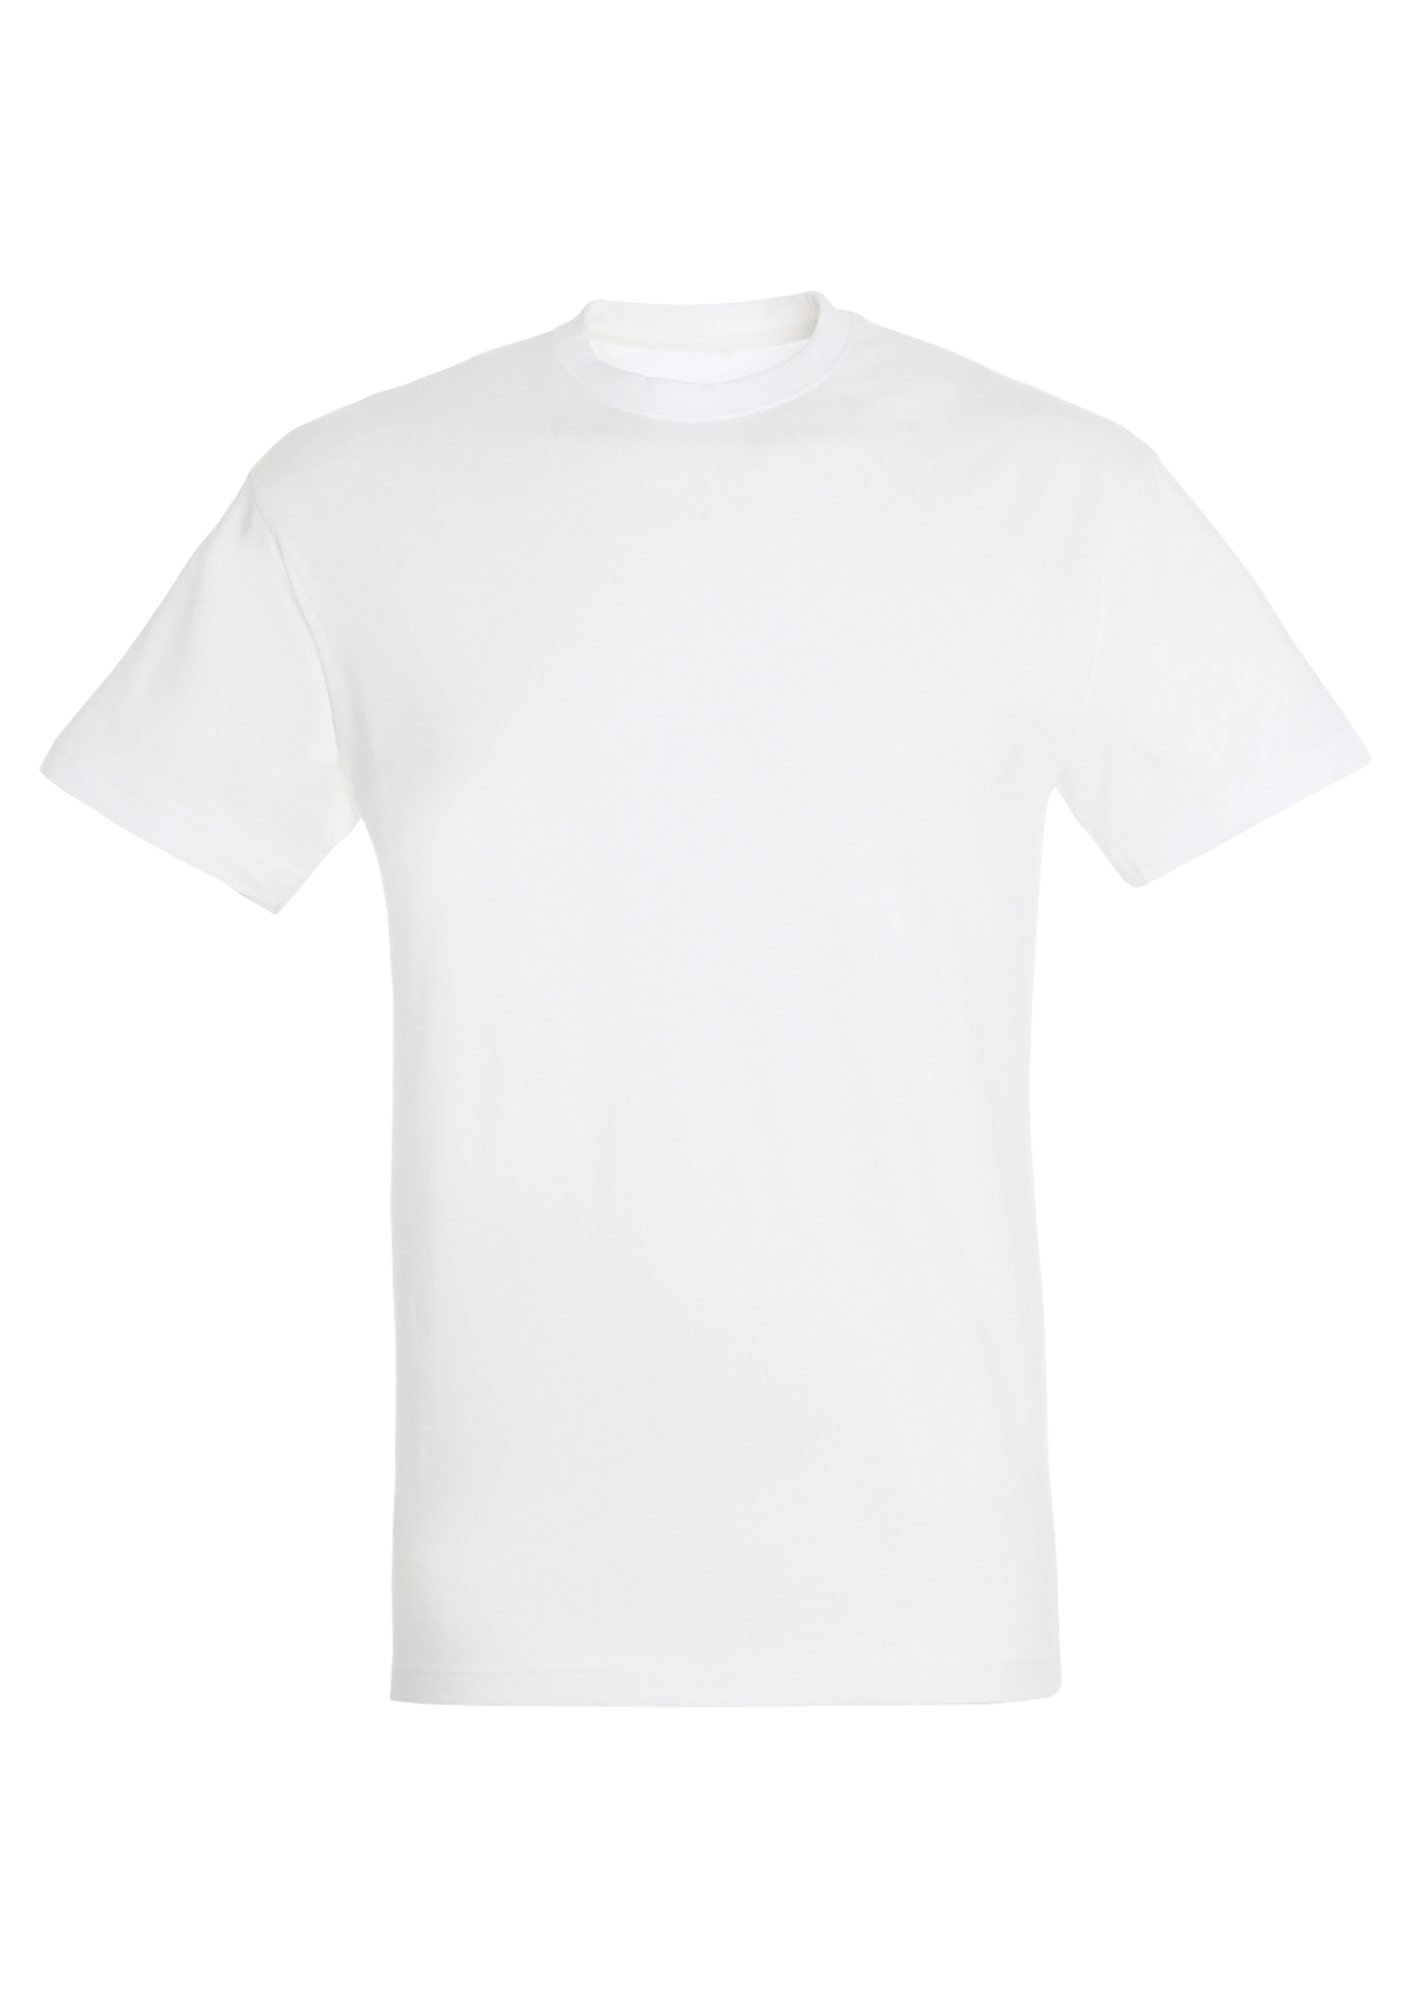 T-shirt Adulte collection "30 Ans" Blanc - REGENT-ADULTE-FACEBLANC